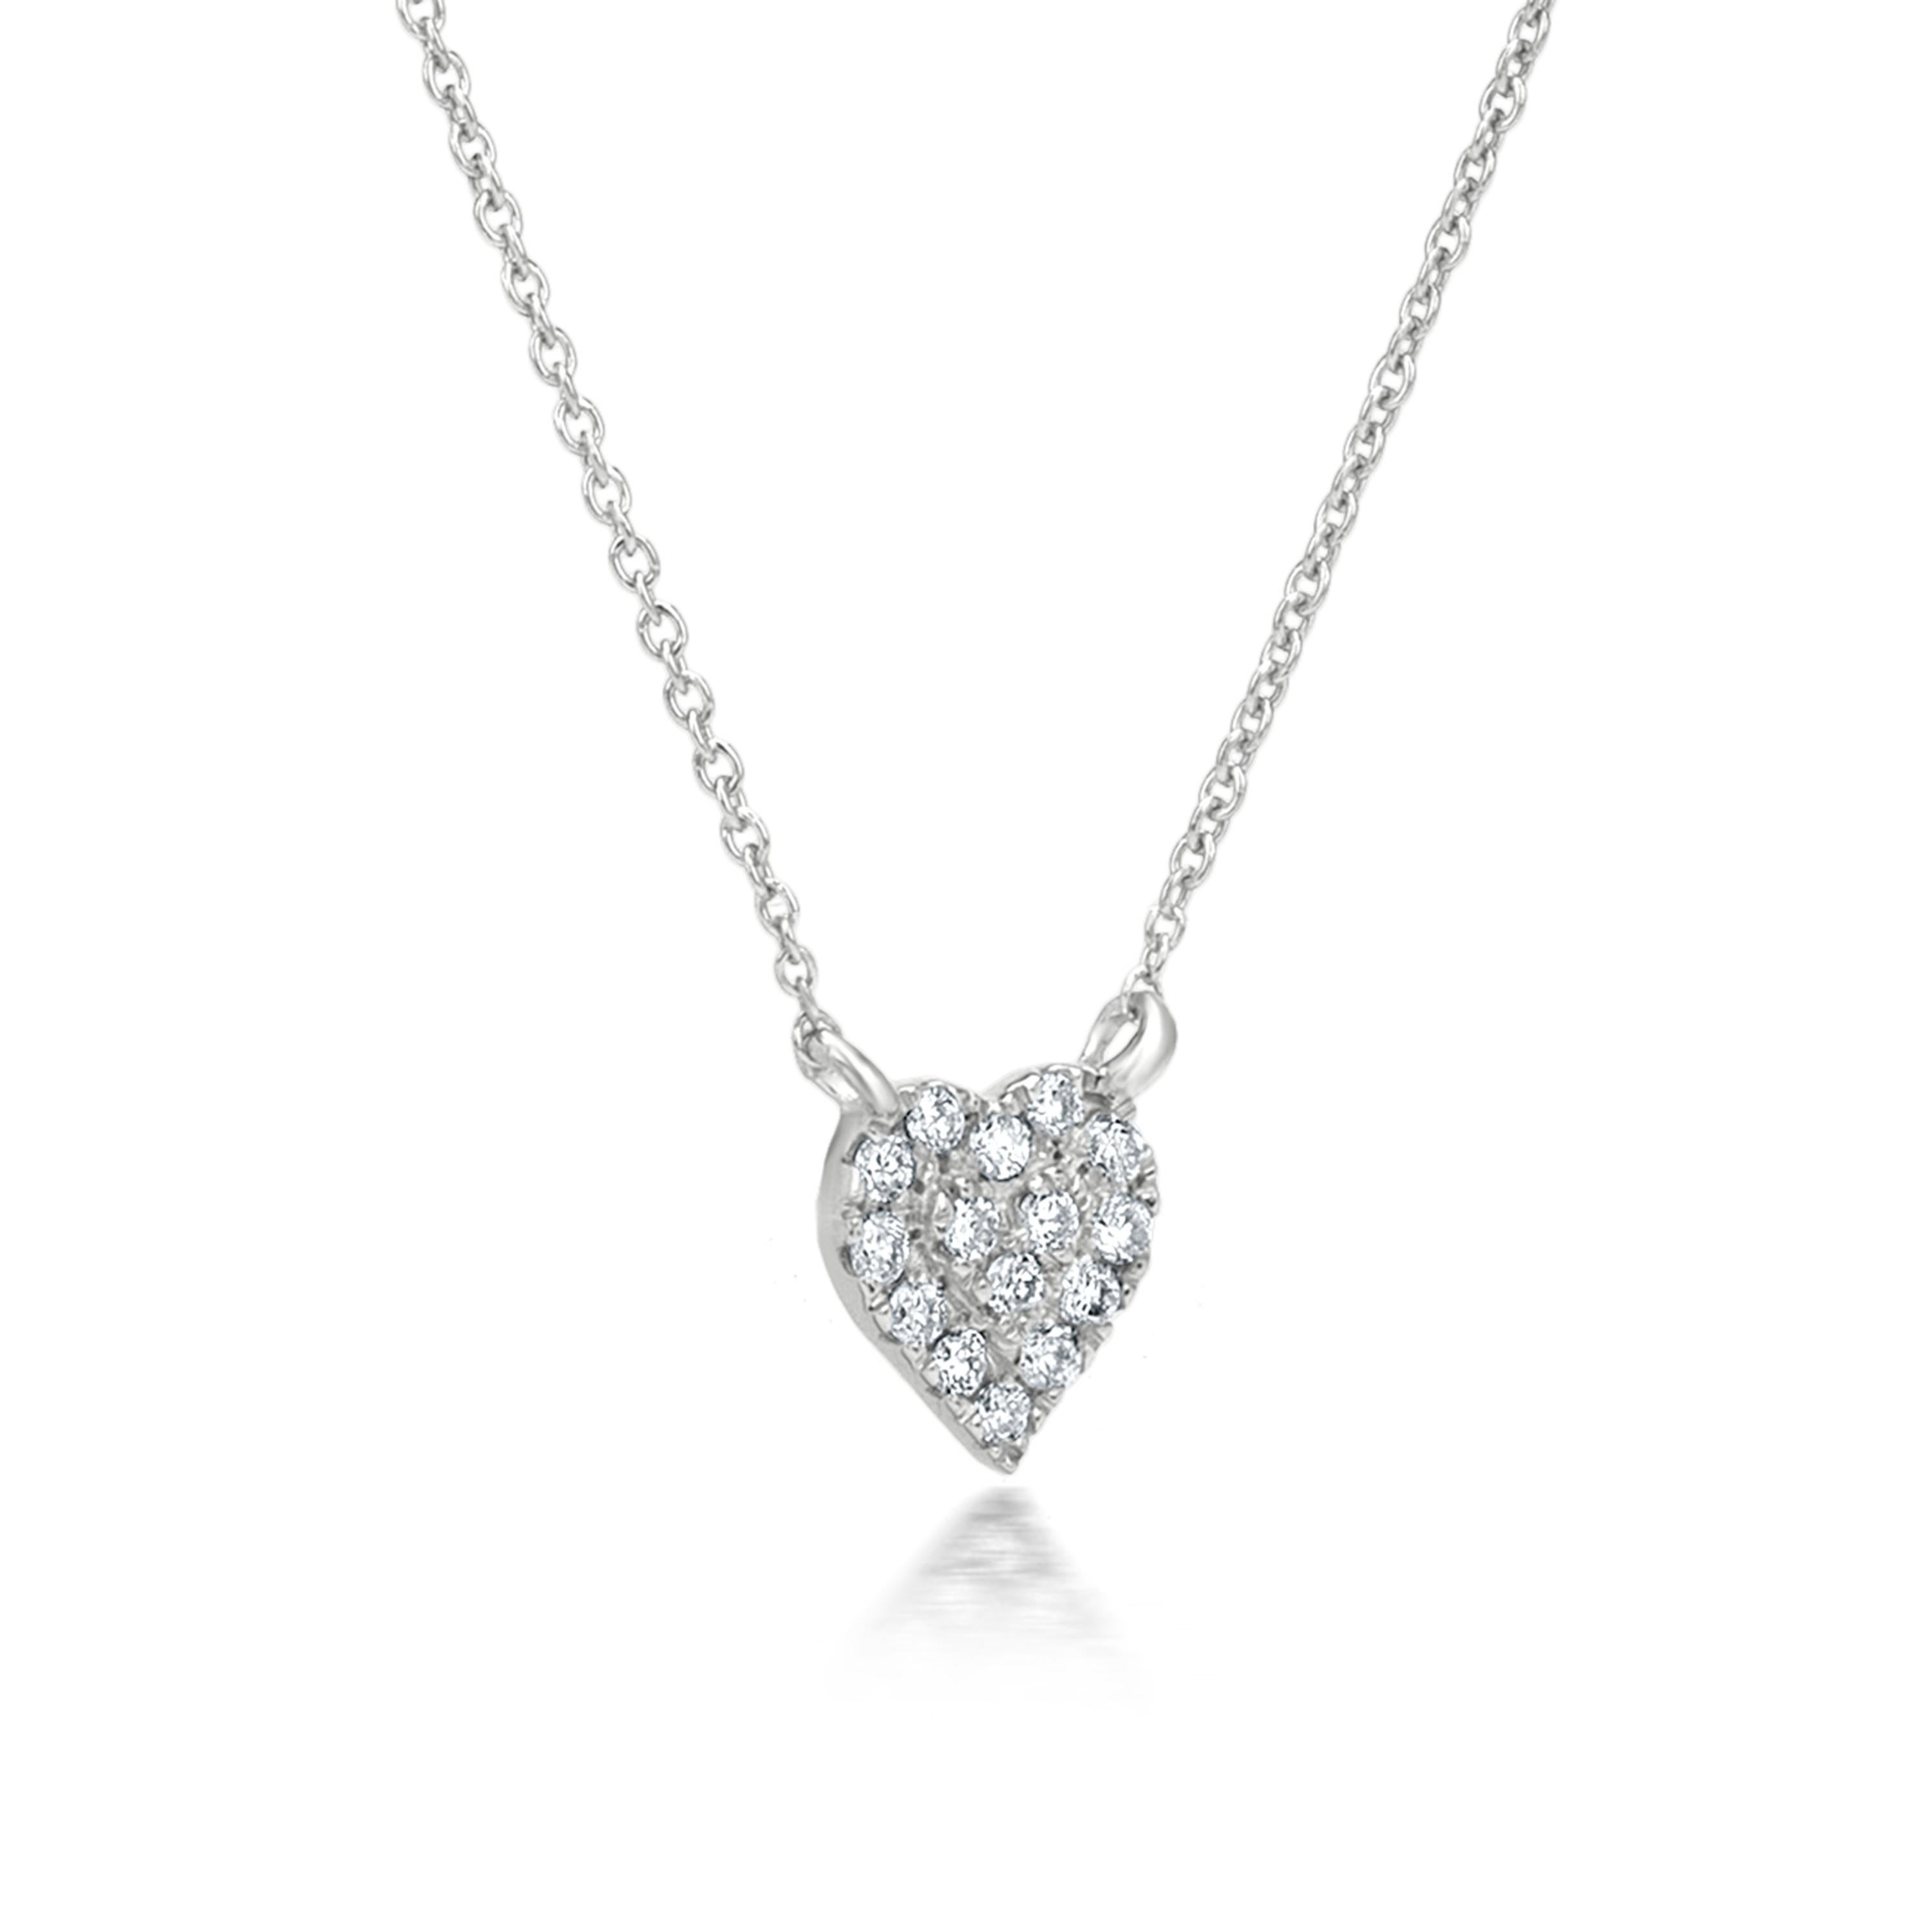 Contemporary Luxle Diamond Heart Pendant Necklace in 18K White Gold